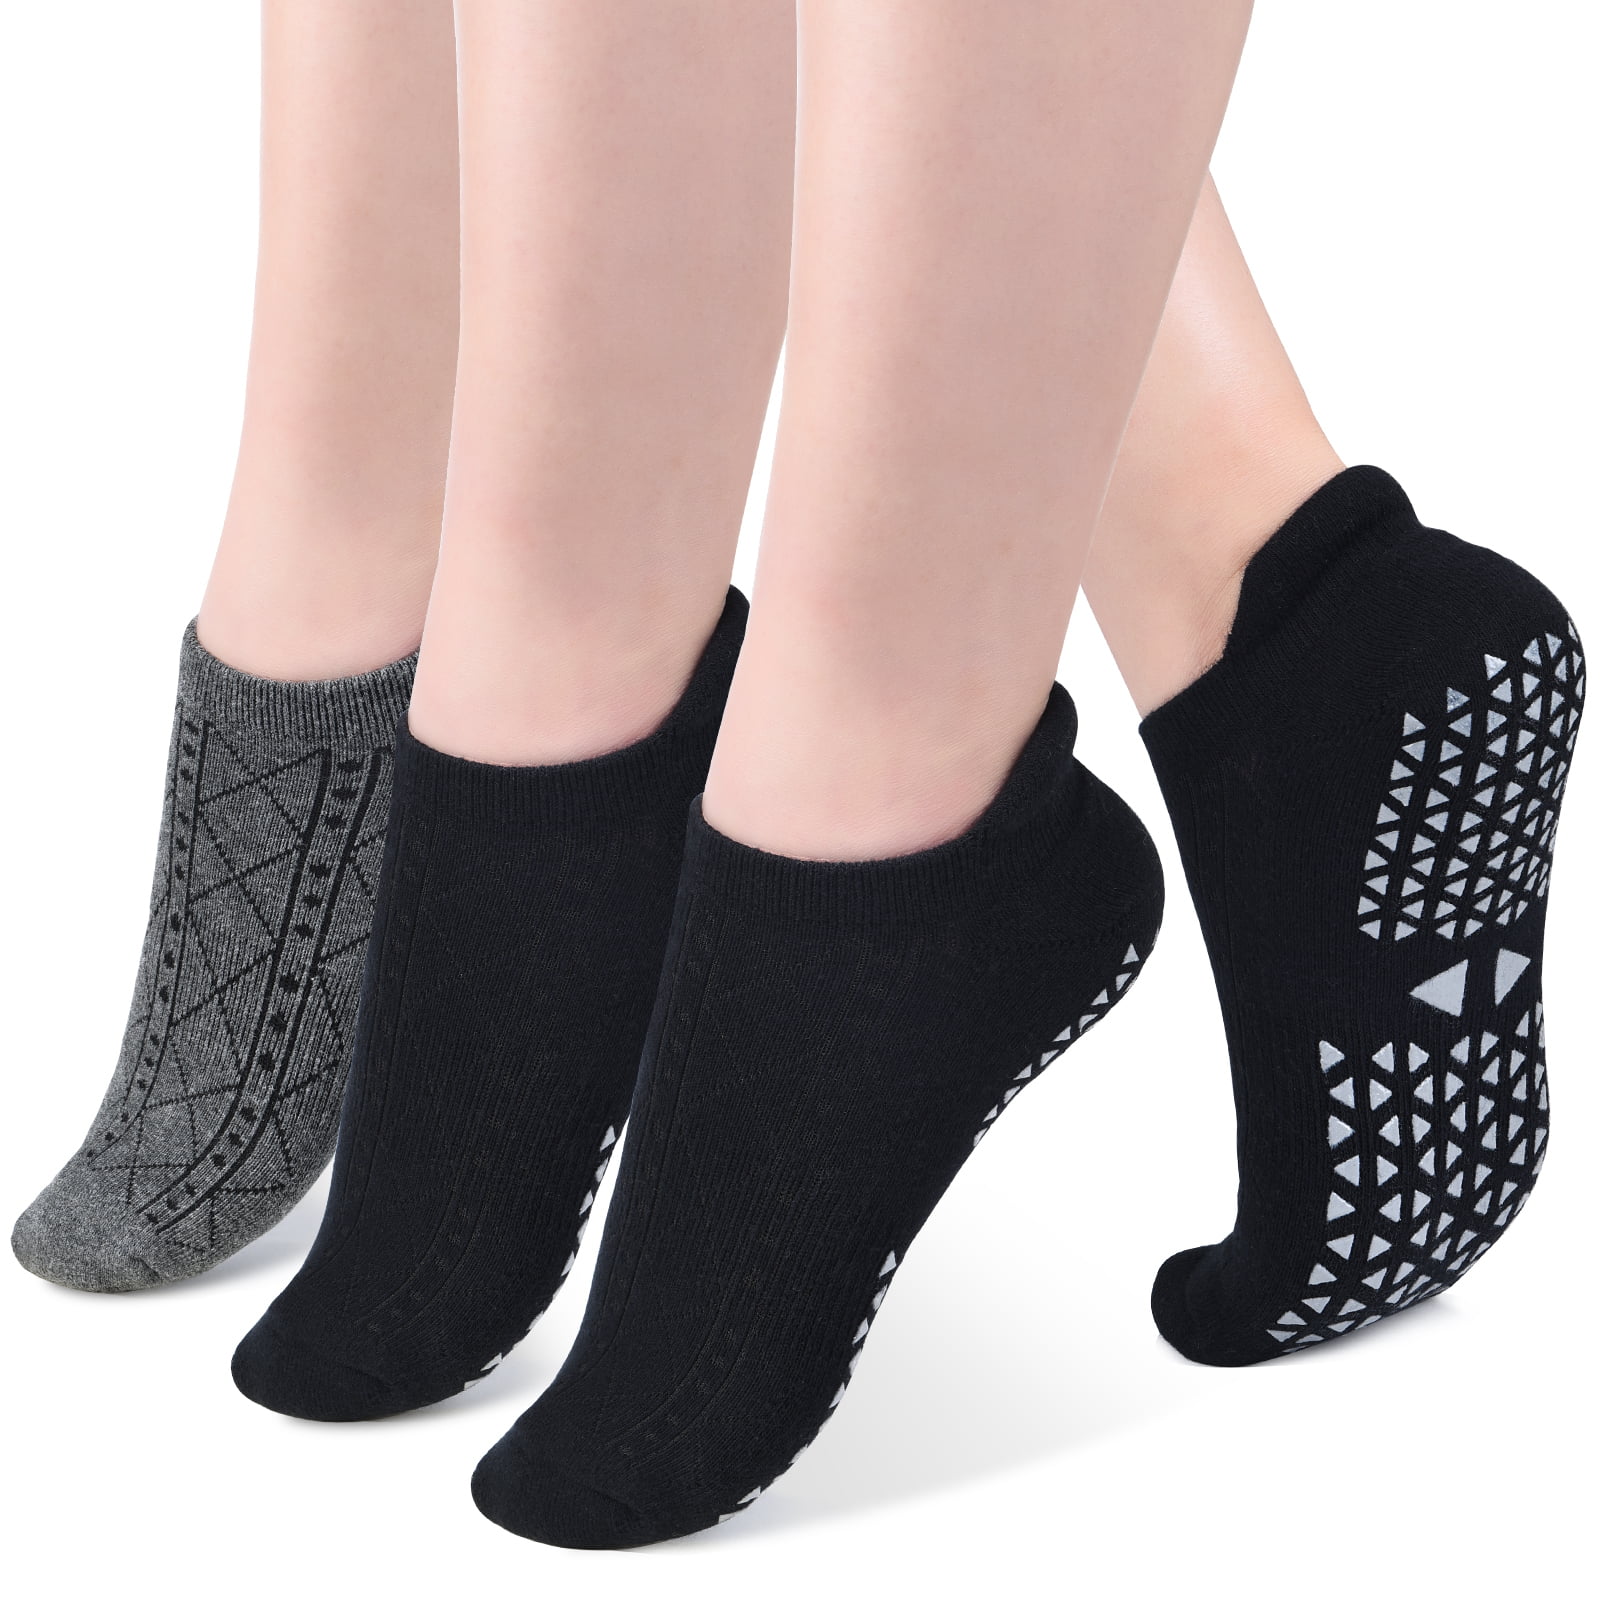 3 Pairs Non Slip Women Yoga Dance Exercise Cotton Socks Full Toe w/ Ankle Grip 